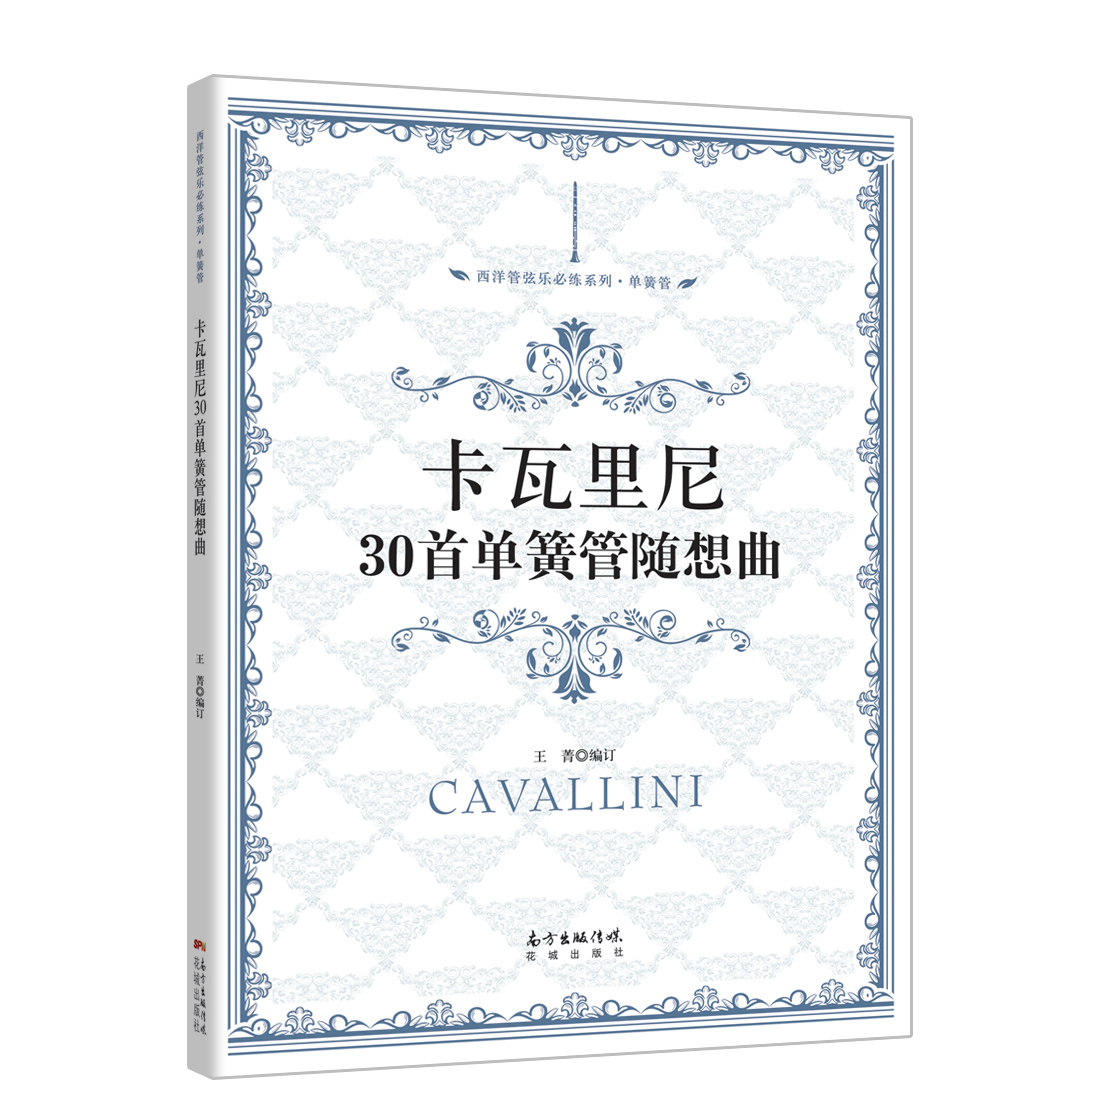 卡瓦里尼30单簧管随想曲 西洋管弦乐必练系列 中国交响乐团单簧管演奏家王菁编订 花城出版社正版书籍